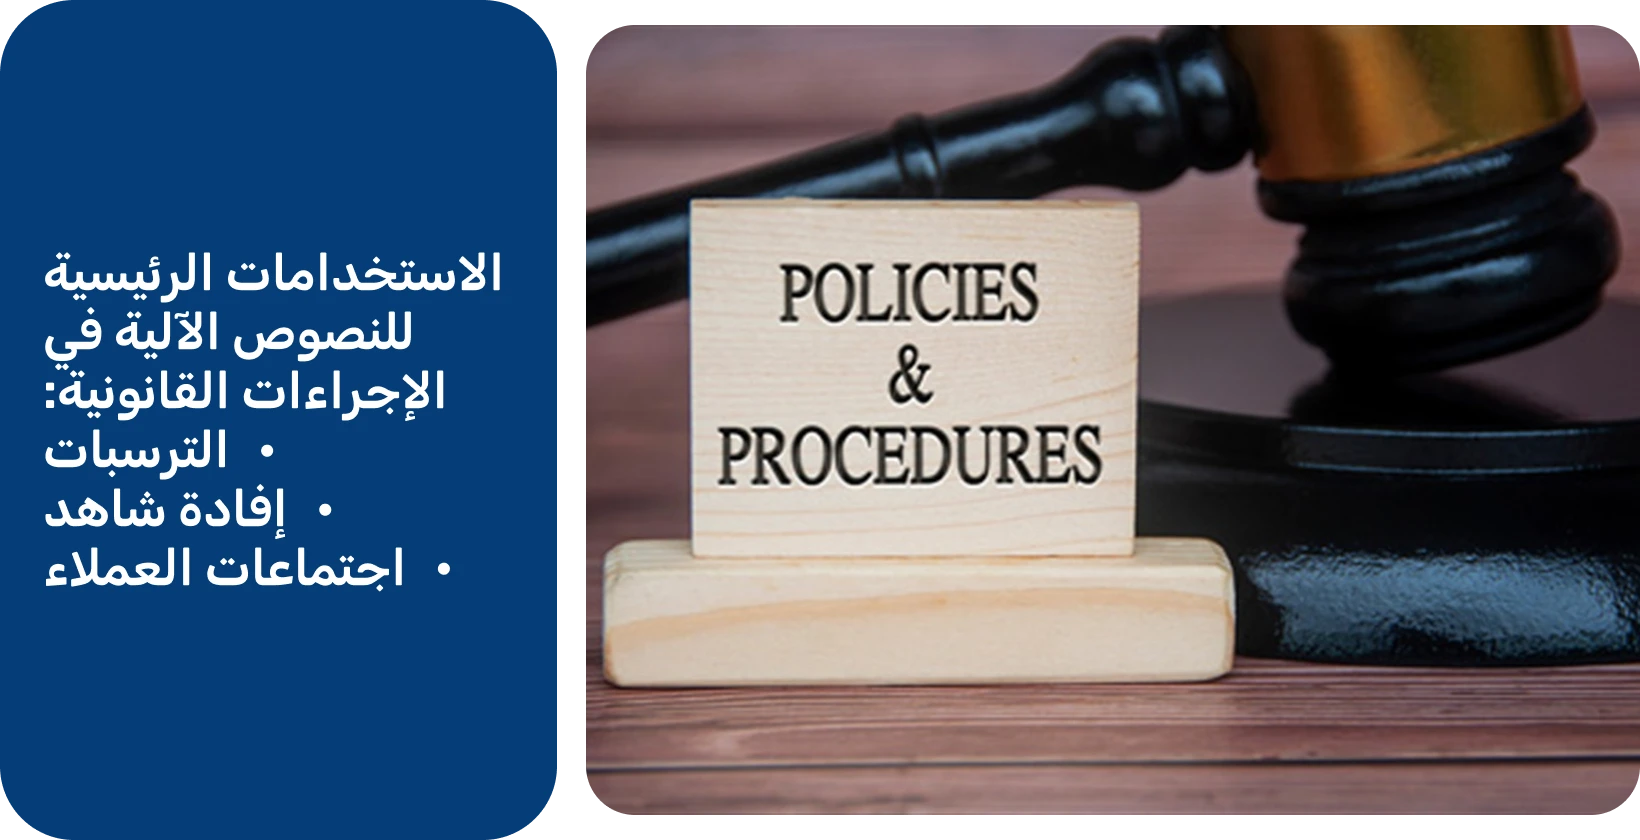 مطرقة بجانب علامة "السياسات والإجراءات" ، تمثل المعايير القانونية التي تفي بها أدوات النسخ الآلي.